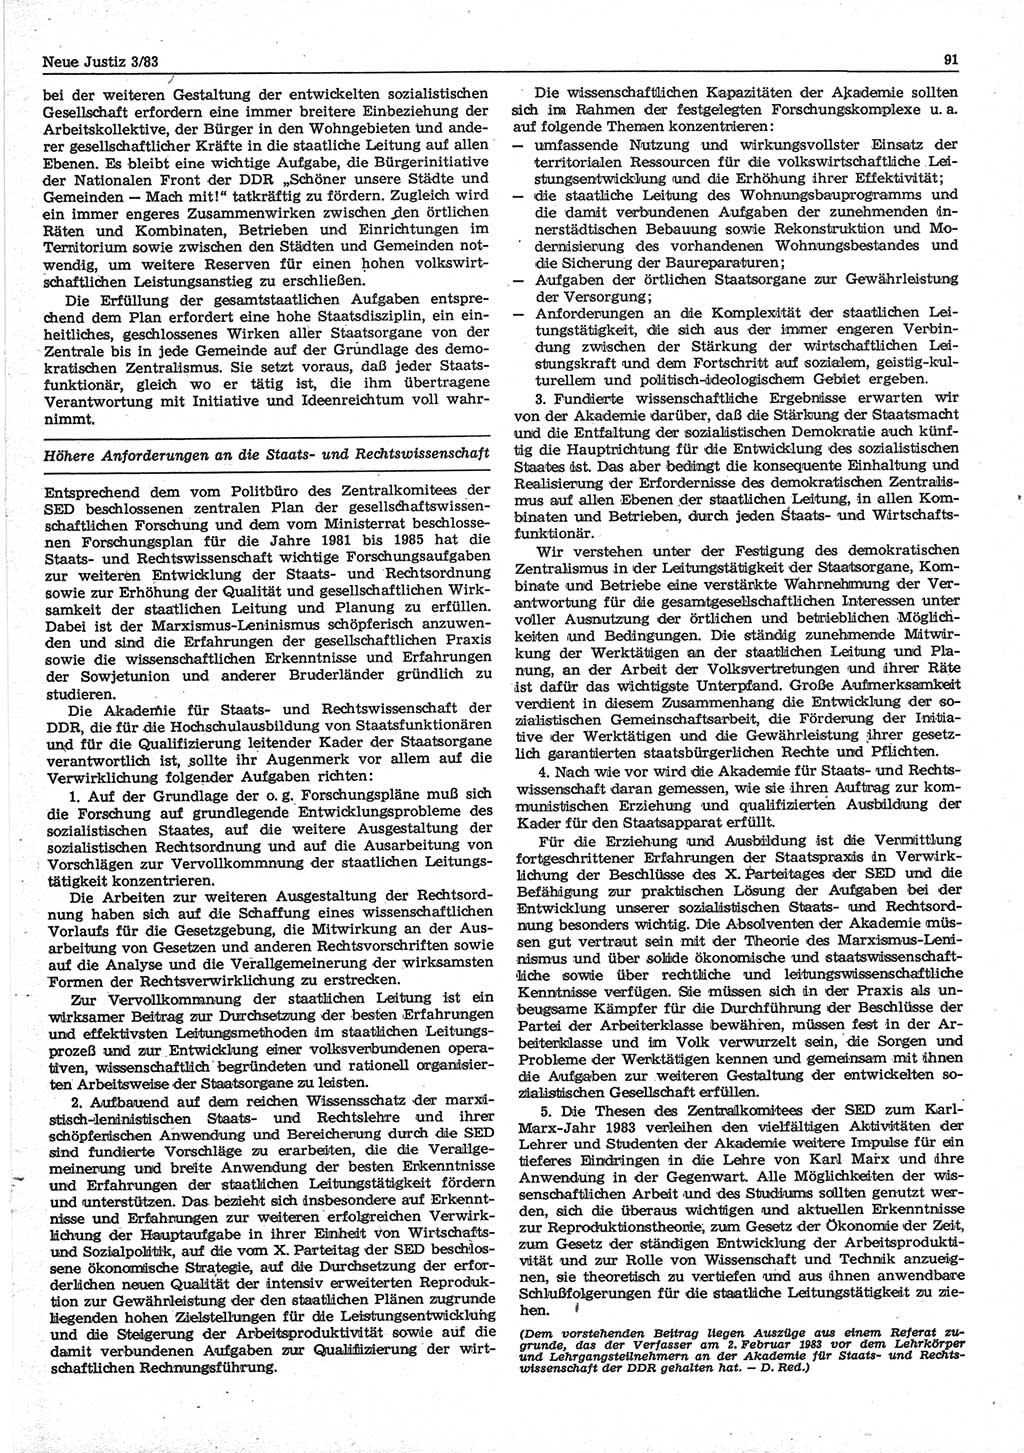 Neue Justiz (NJ), Zeitschrift für sozialistisches Recht und Gesetzlichkeit [Deutsche Demokratische Republik (DDR)], 37. Jahrgang 1983, Seite 91 (NJ DDR 1983, S. 91)